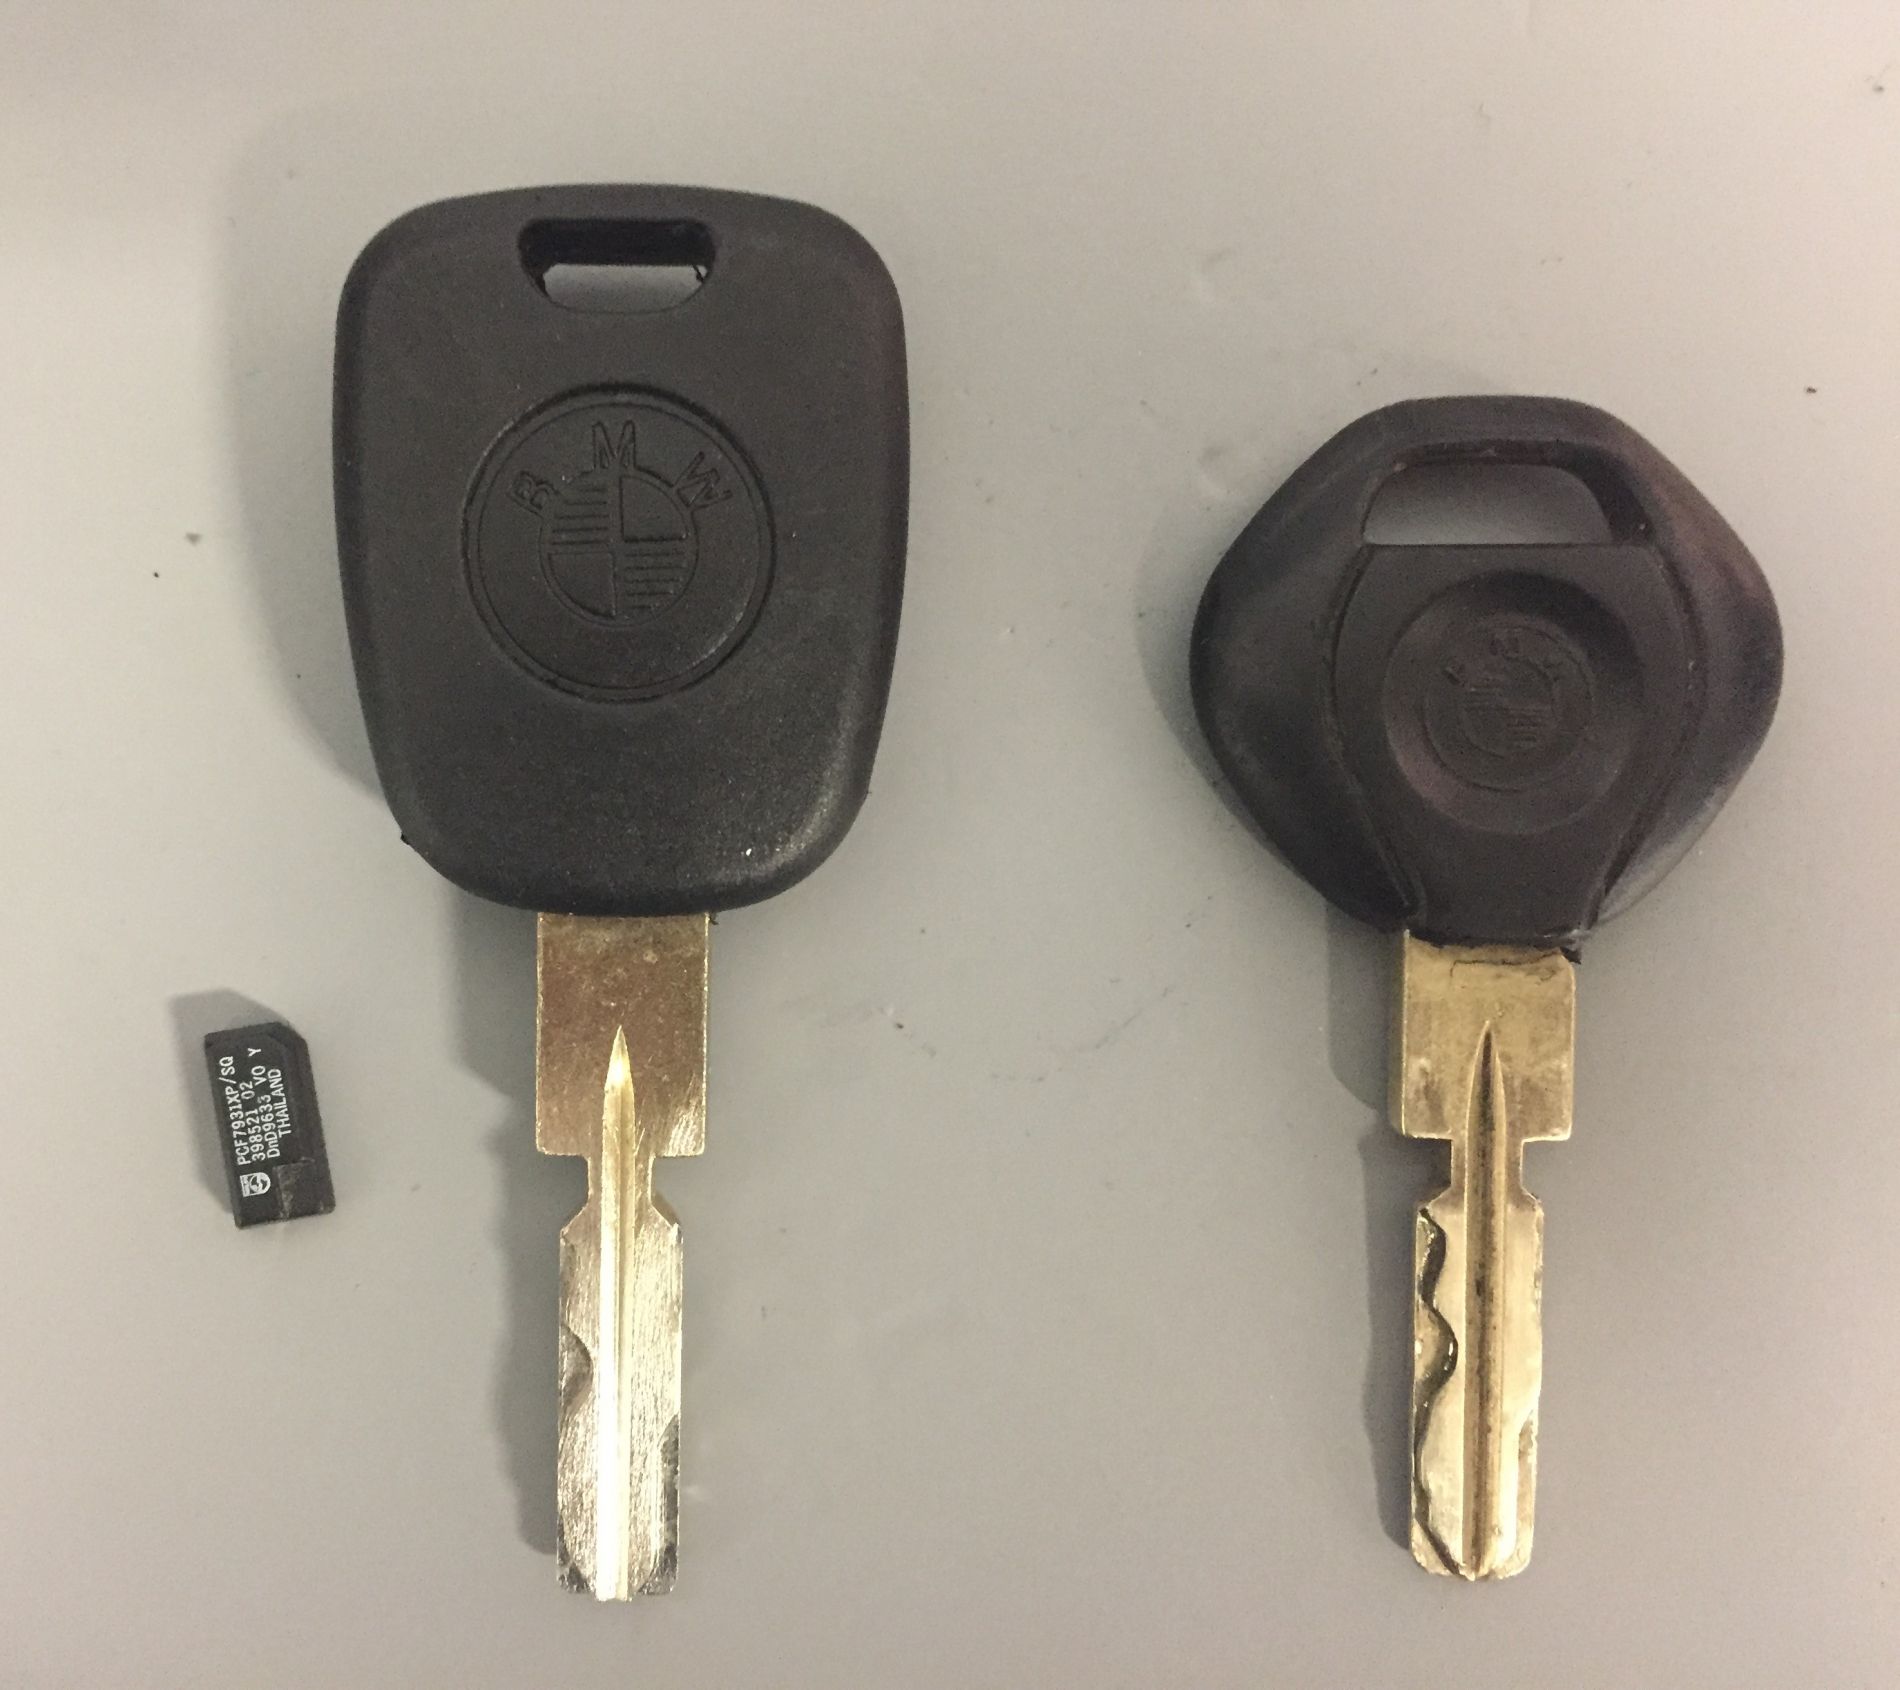 Dorobienie kluczyka samochodowego do BMW serii 3